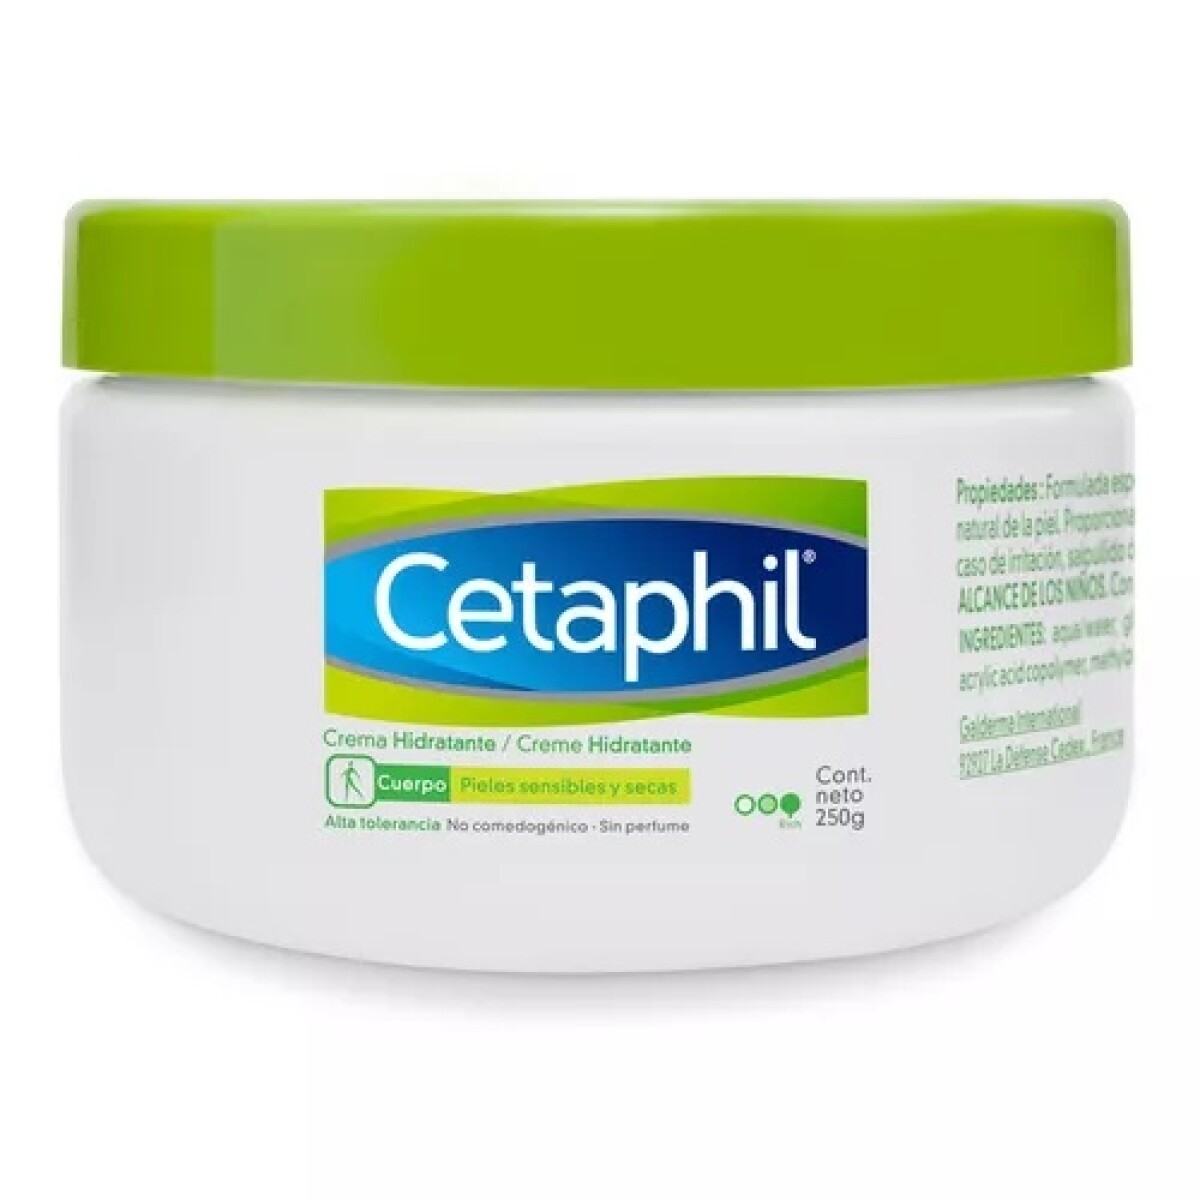 Cetaphil Crema Hidratante Para Cuerpo 